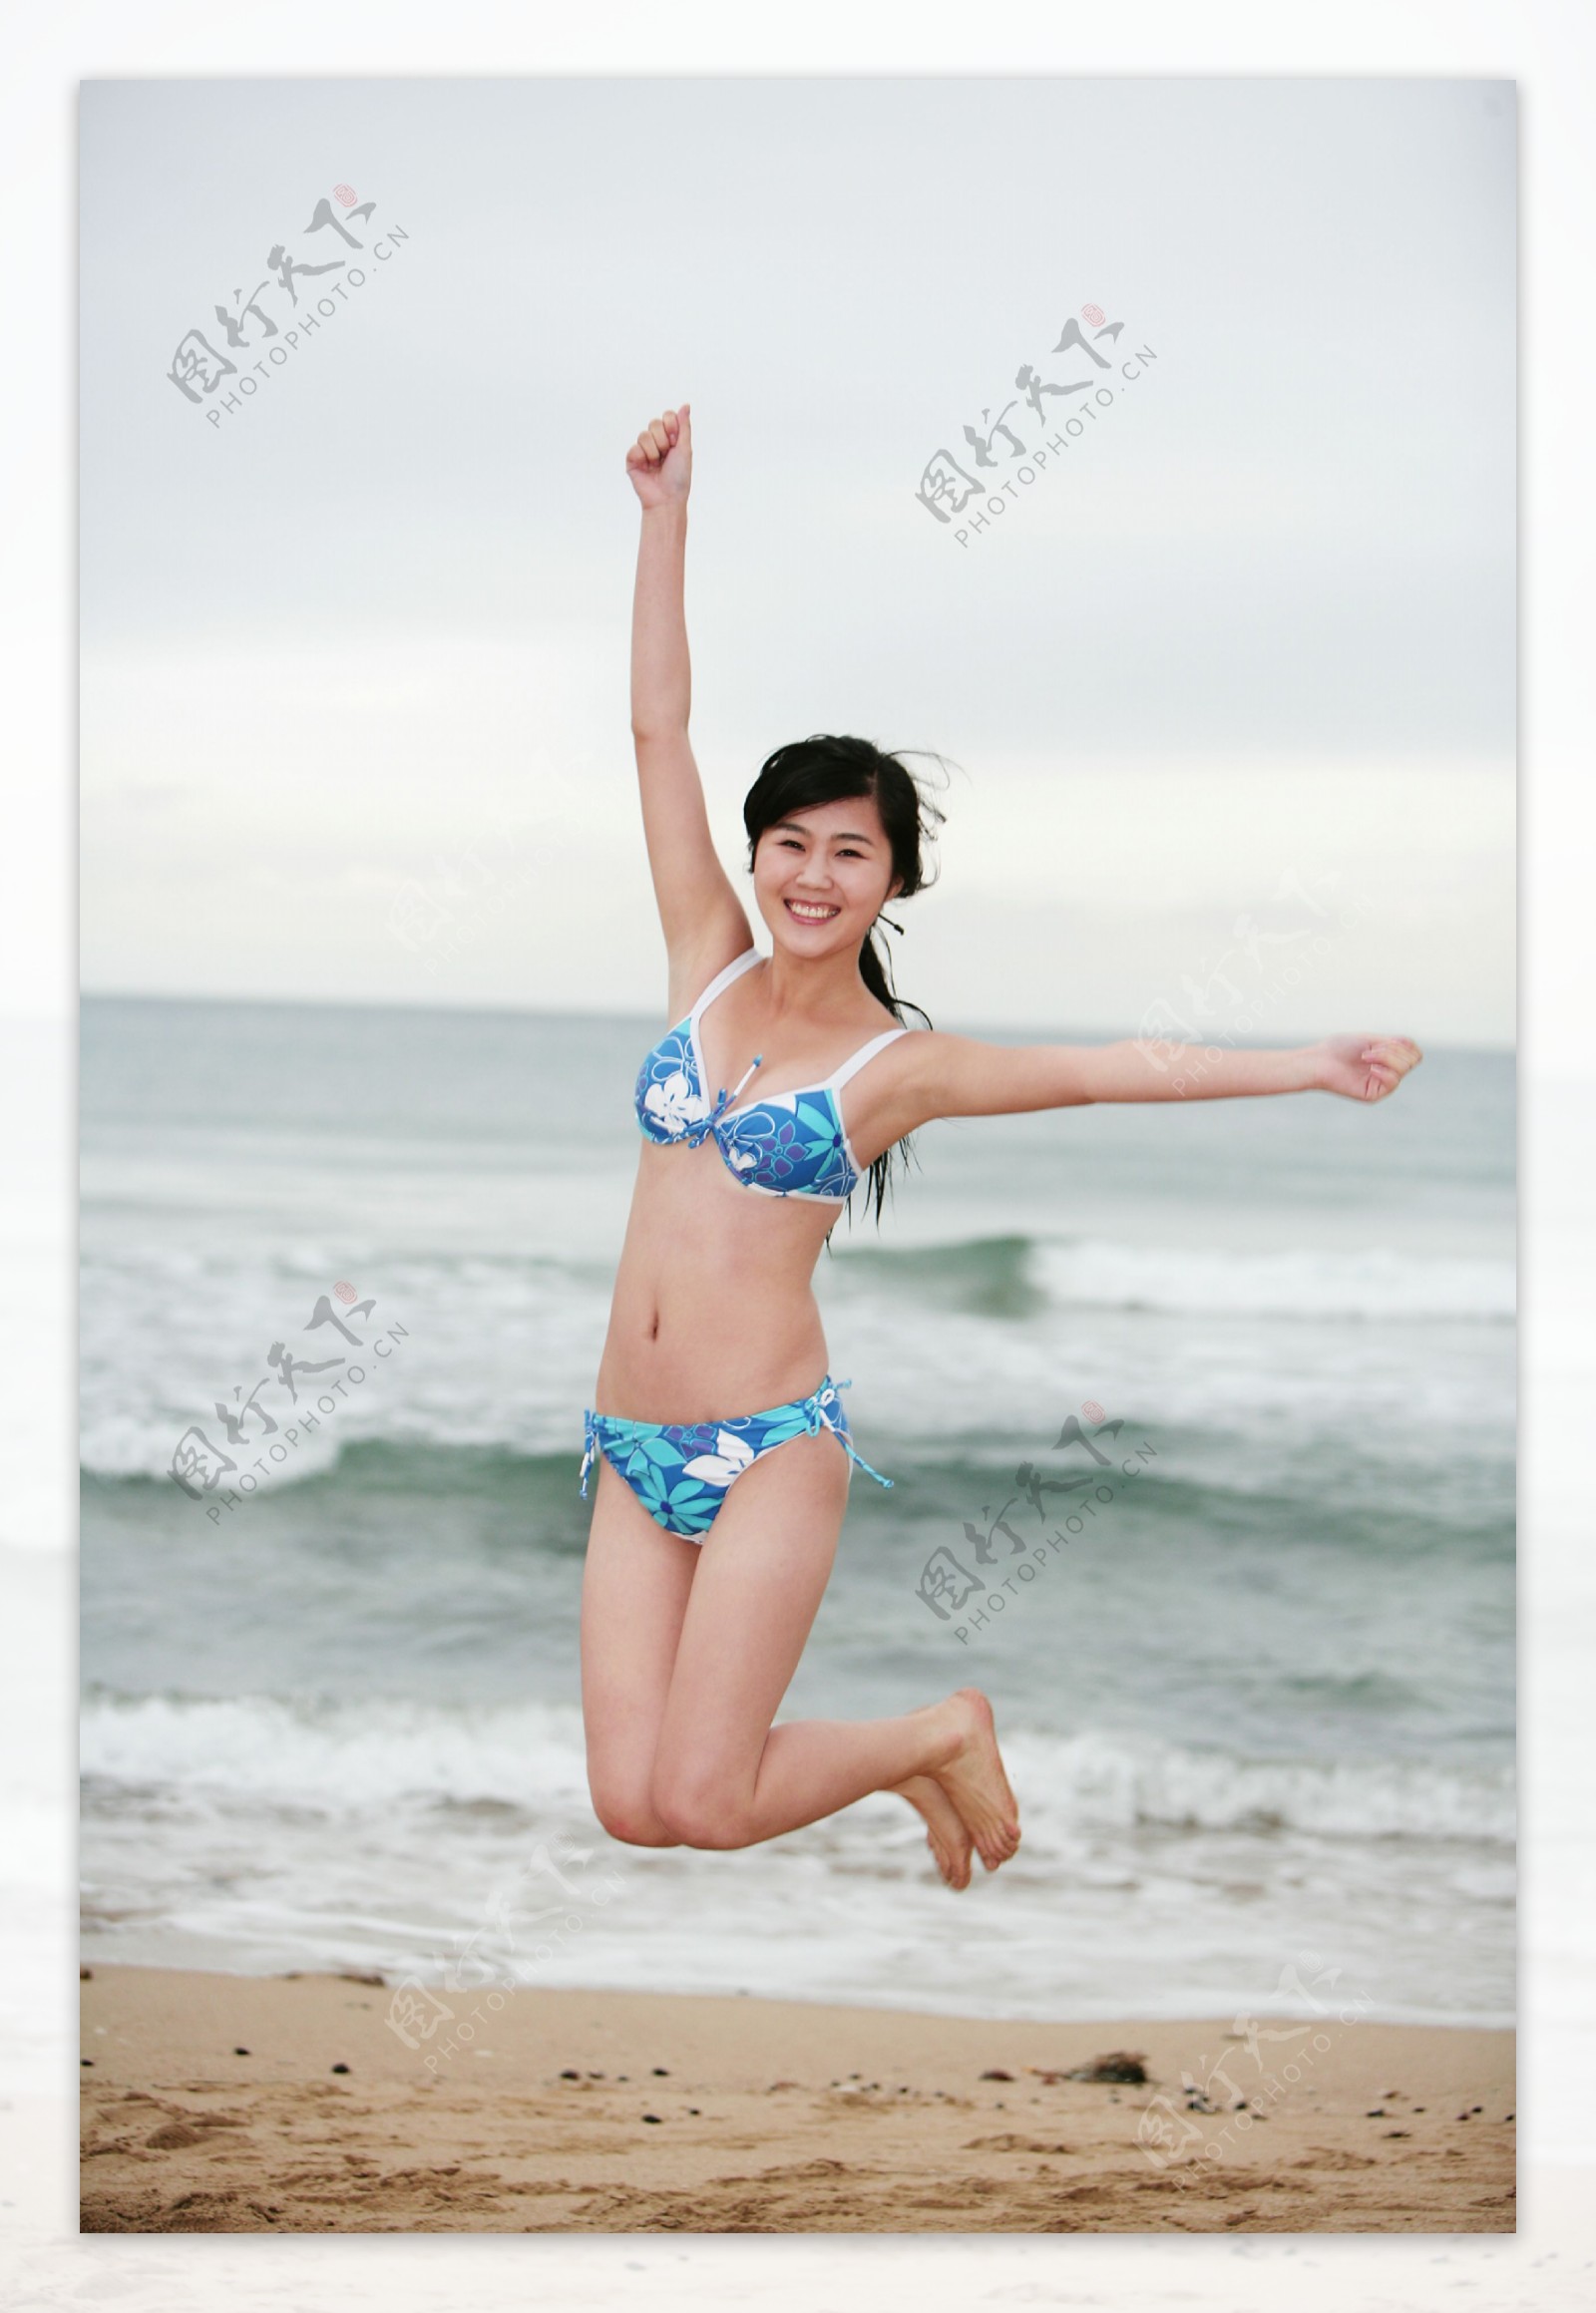 沙滩跳跃的美女图片